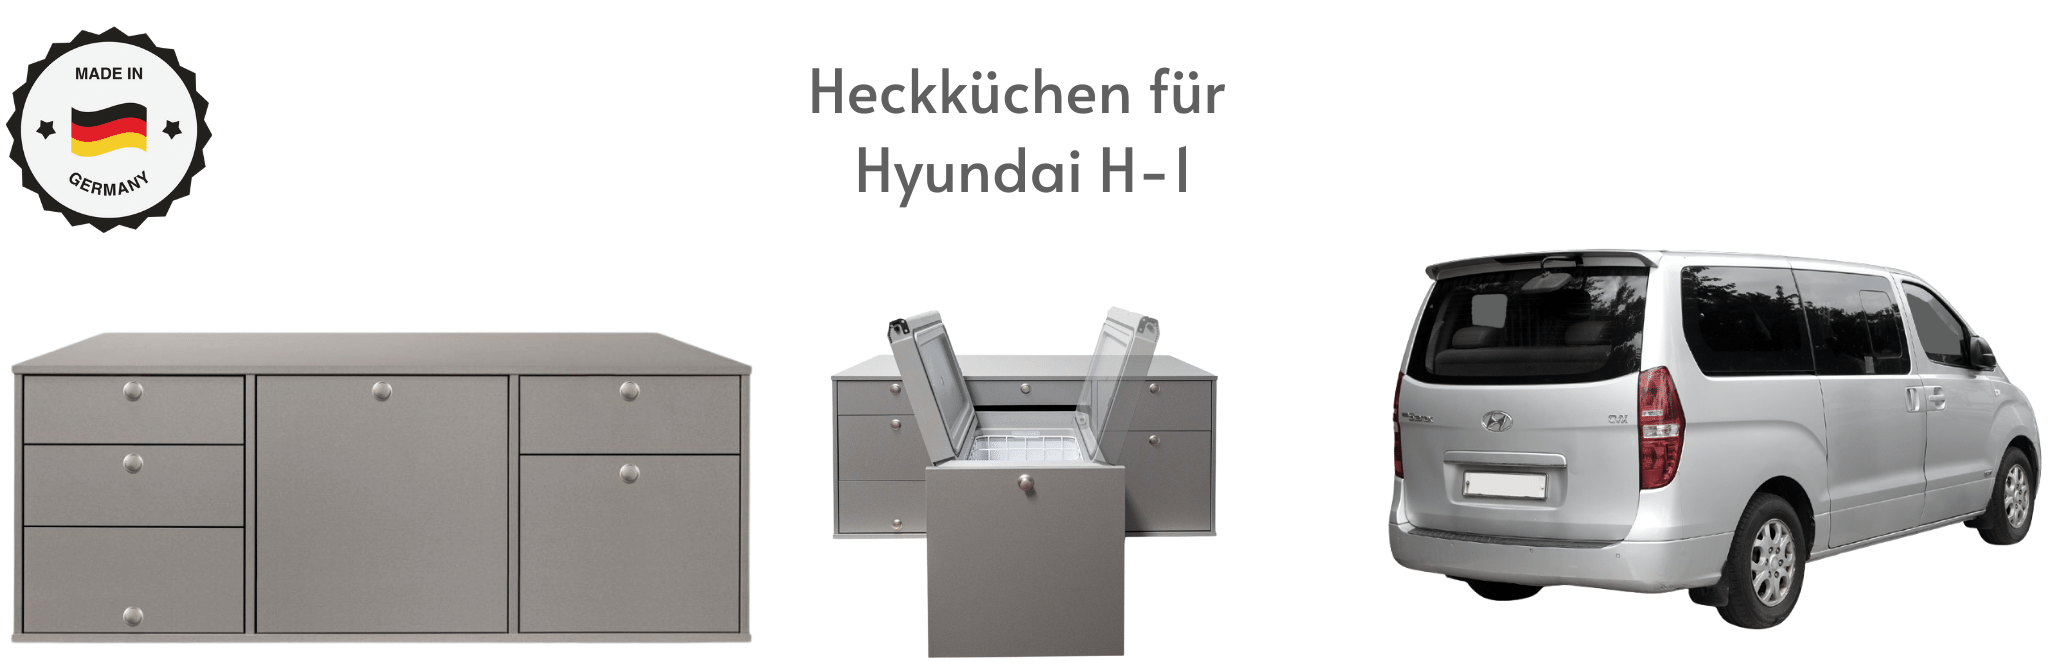 Heckküchen für Hyundai H-1